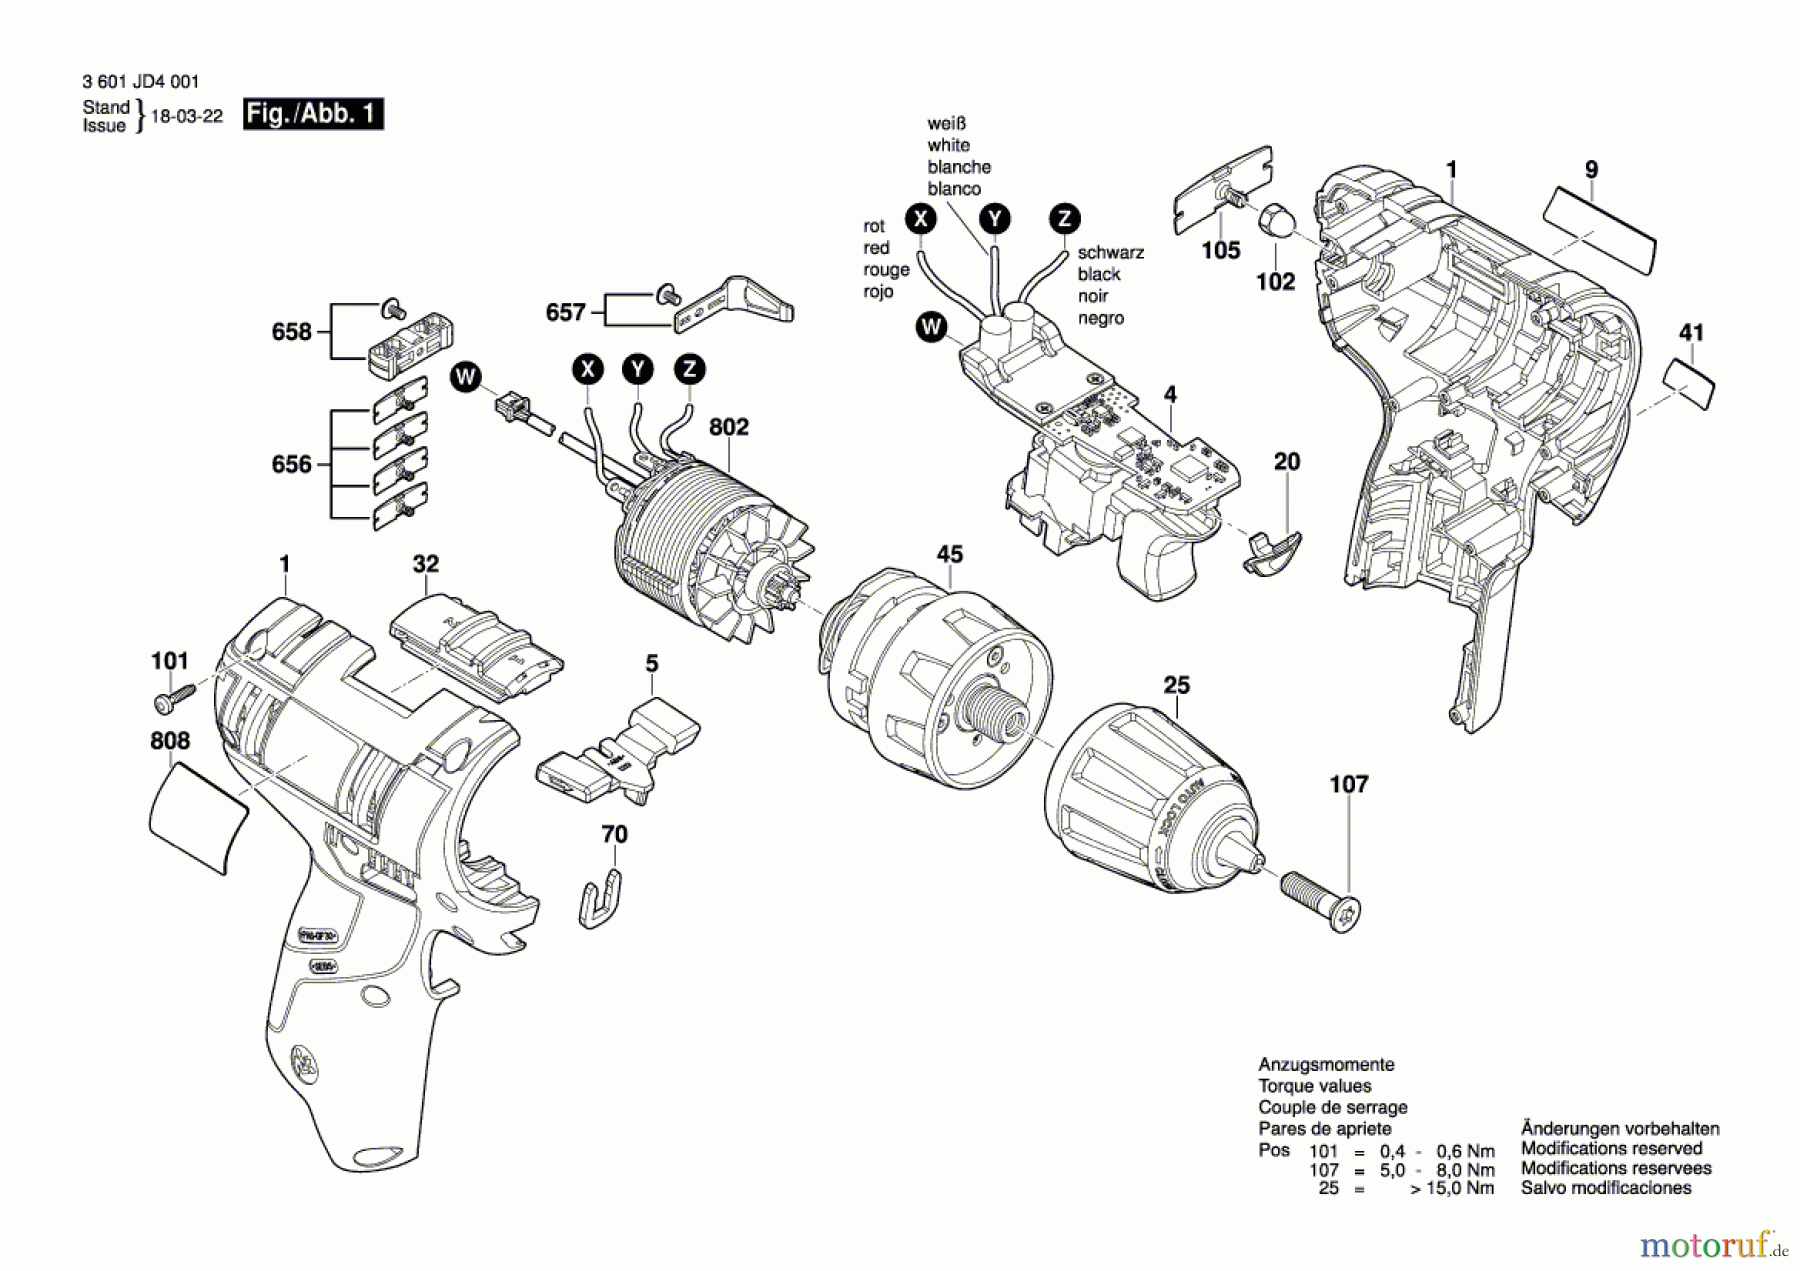  Bosch Akku Werkzeug Akku-Bohrschrauber GSR 12 V-EC Seite 1